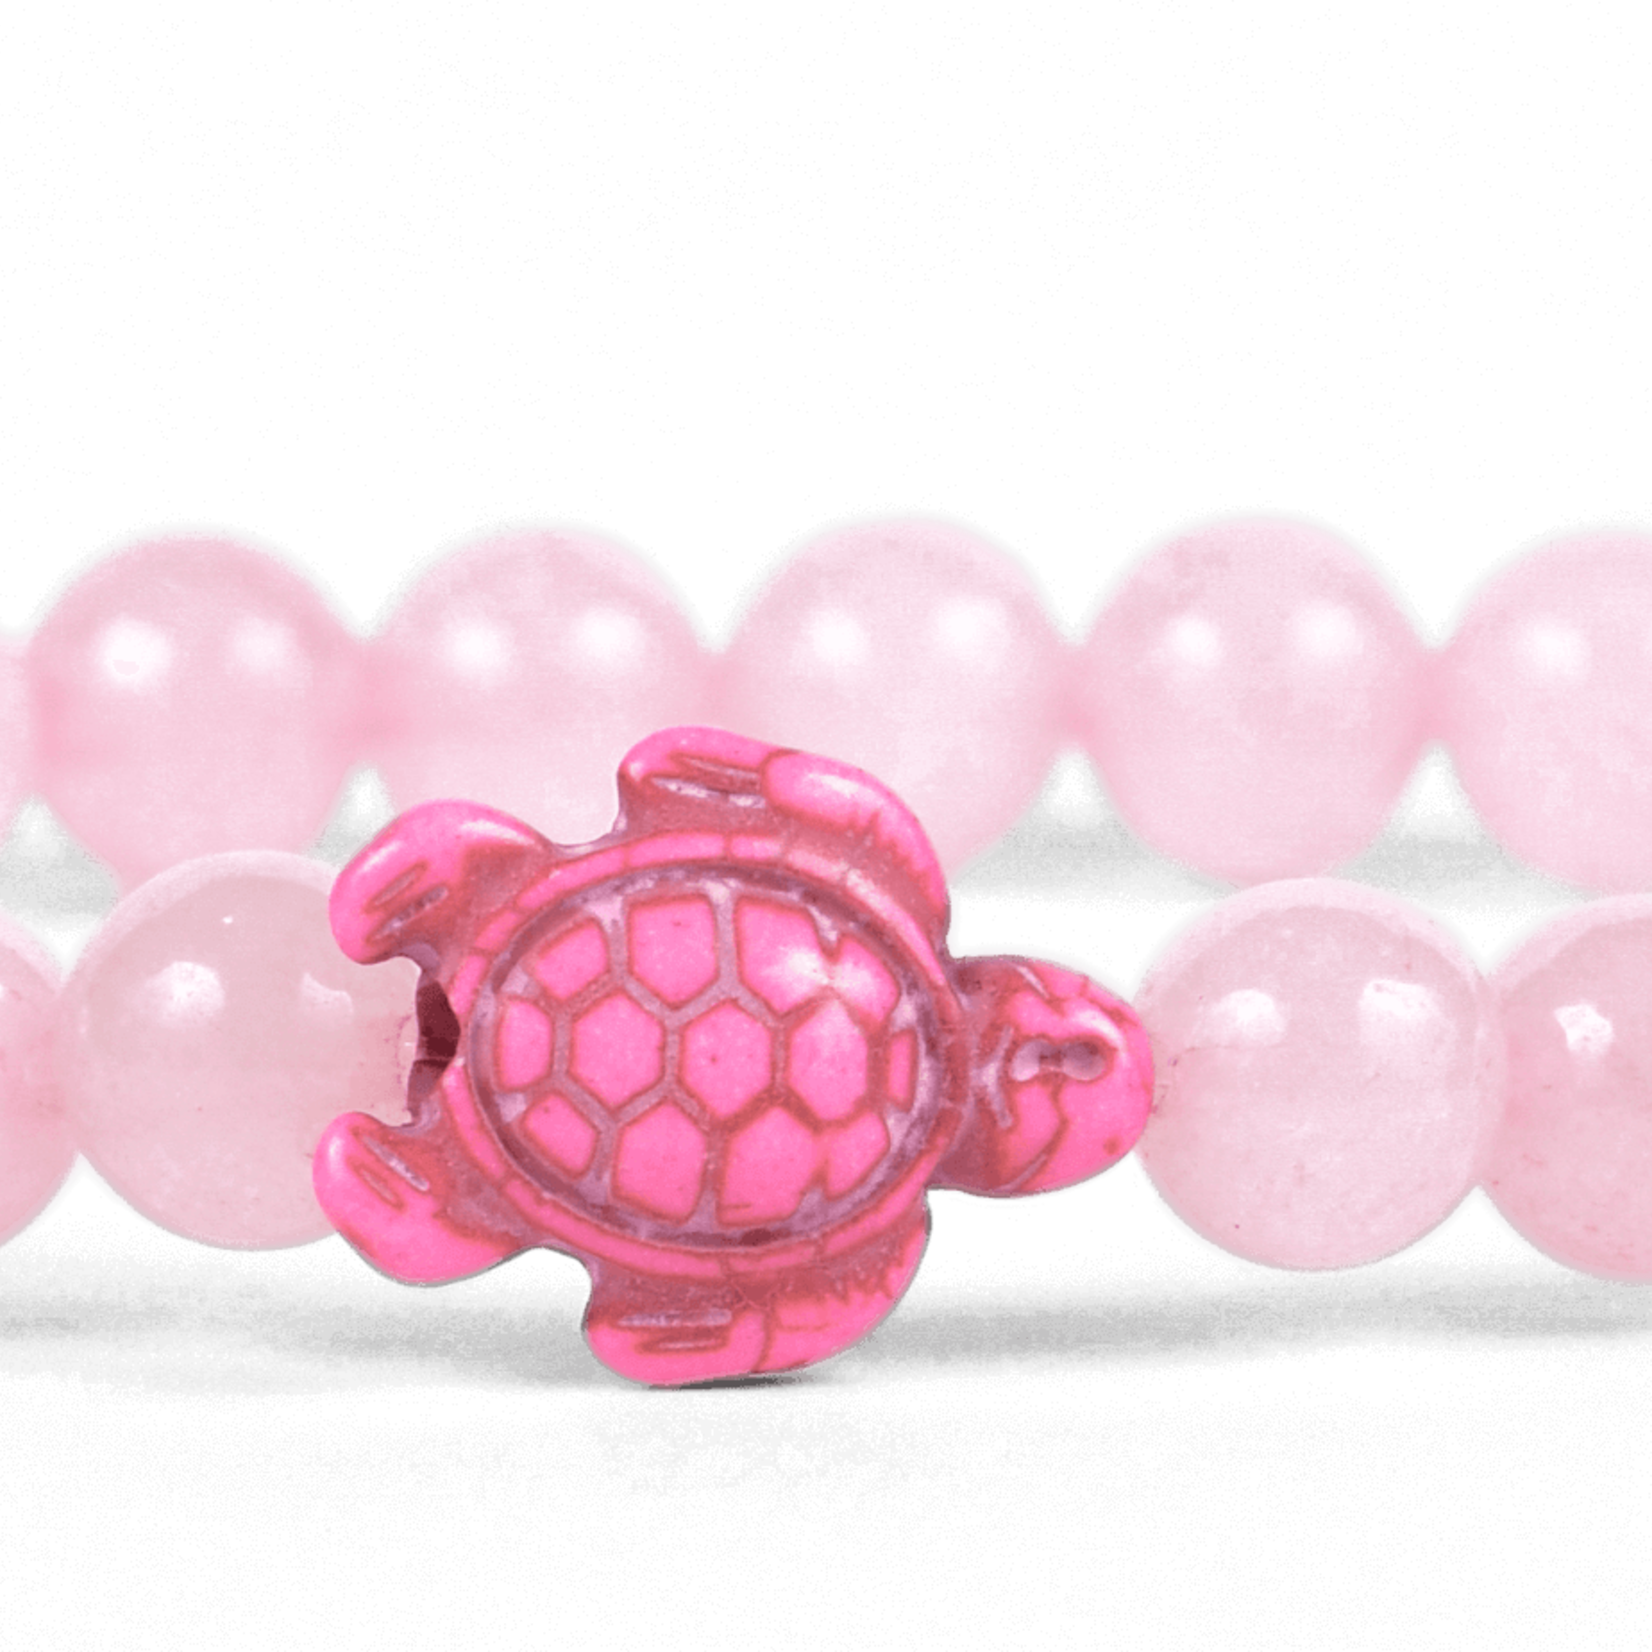 Fahlo Fahlo - The Journey Bracelet (Turtle) - Pink